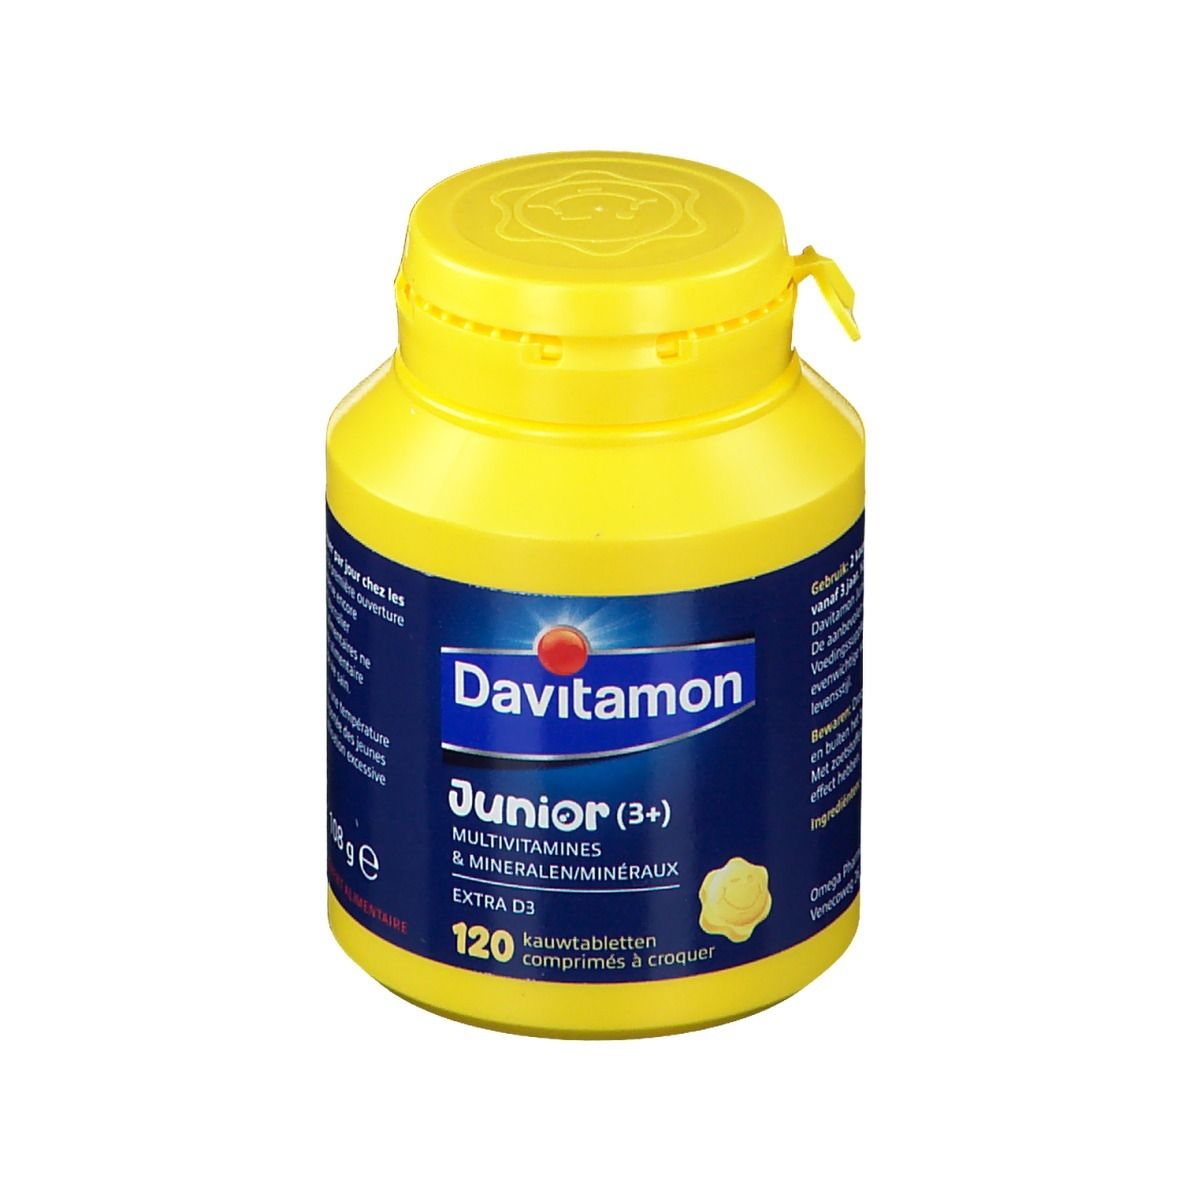 Image of Davitamon Junior (3+) Multivitamine und Mineralien